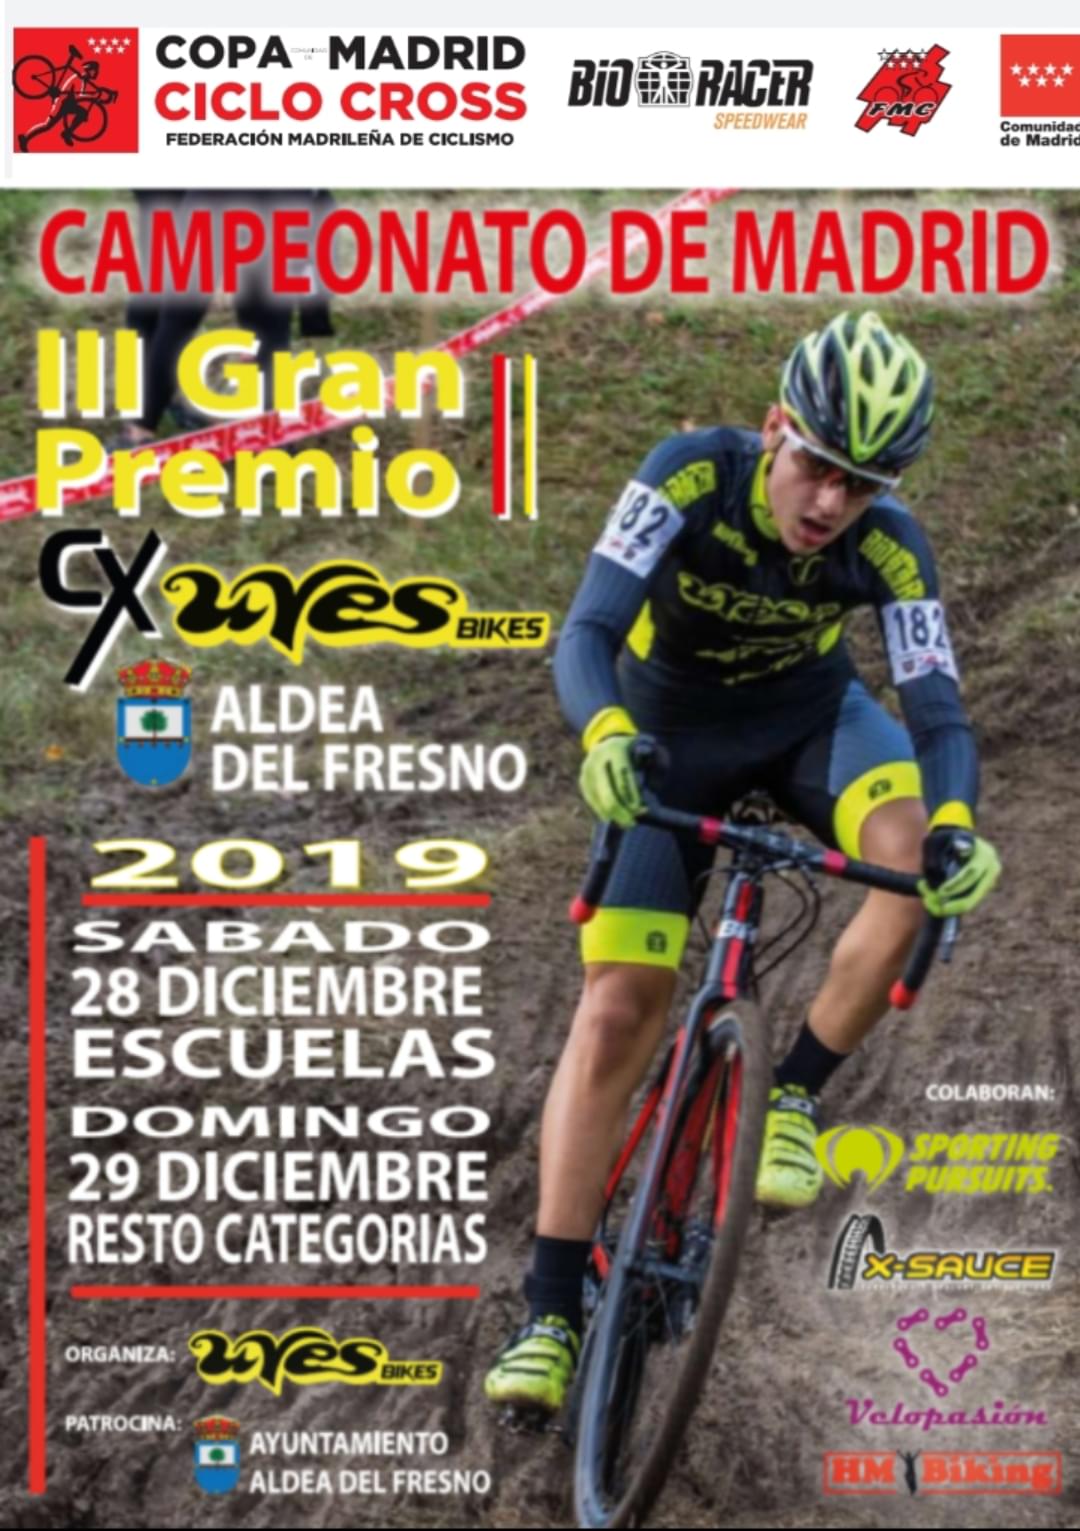 Aldea del Fresno, sede de los Campeonatos de Madrid de ciclocross el 28 y 29 de Diciembre